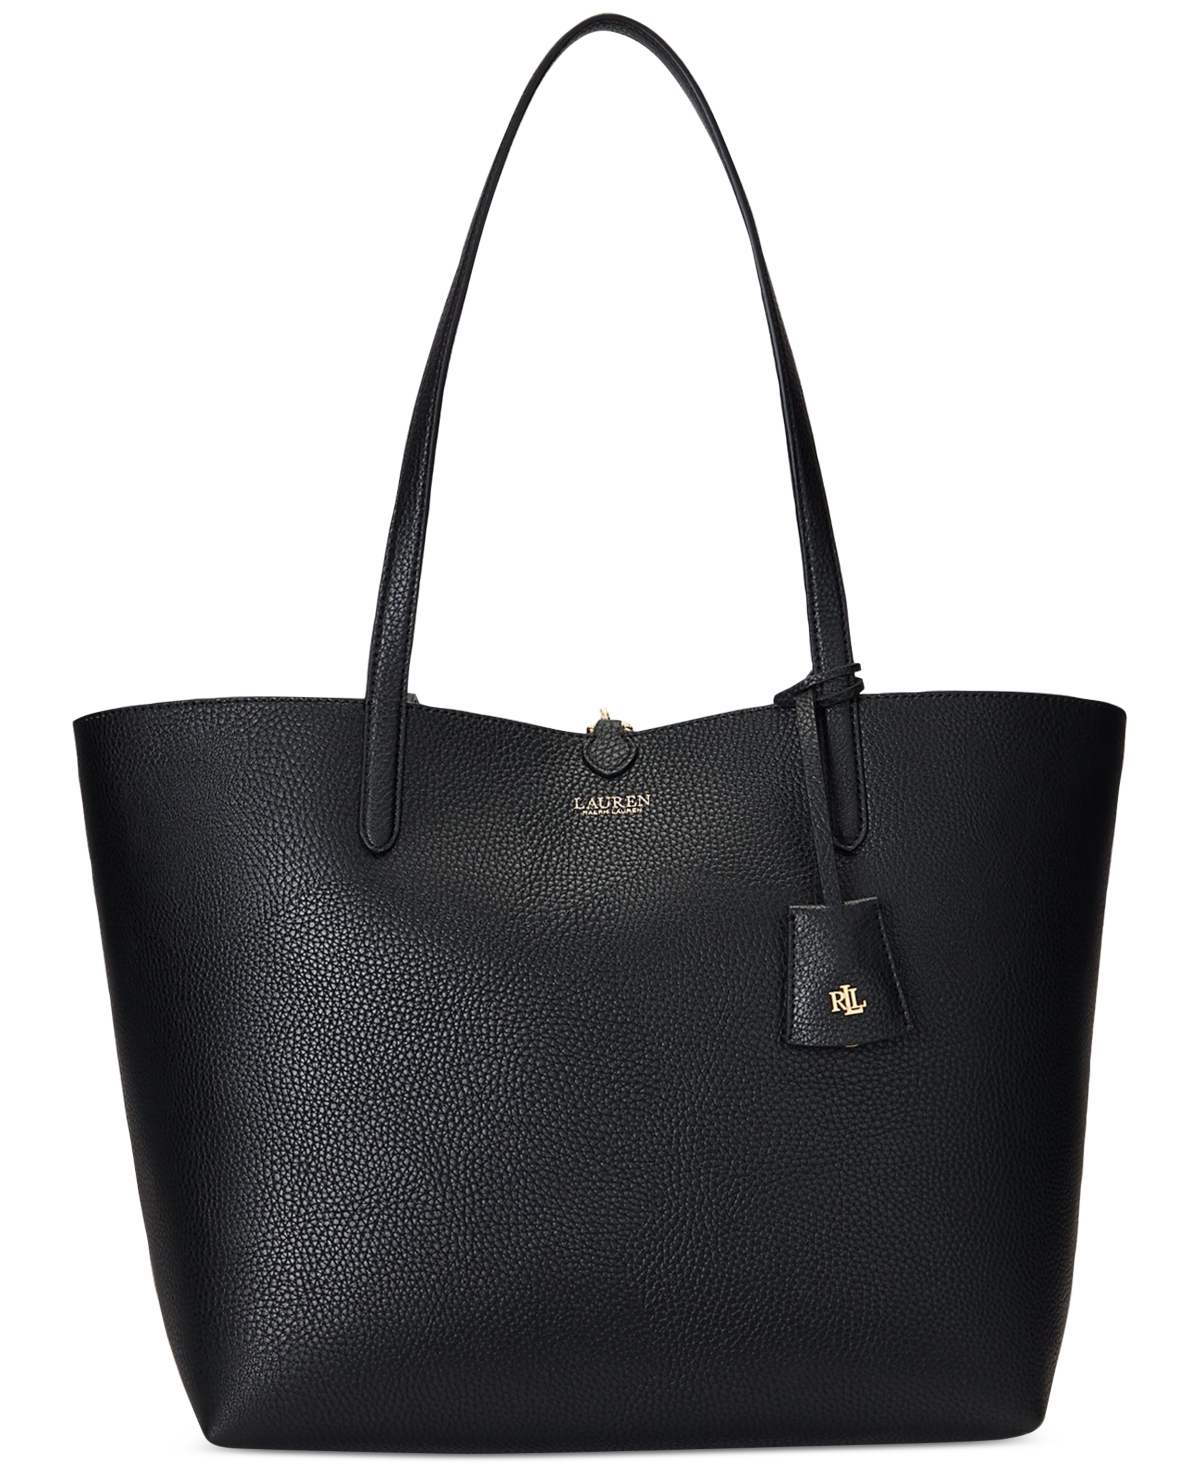 Lauren Ralph Lauren Large Reversible Tote Bag In Black,lankester Garden